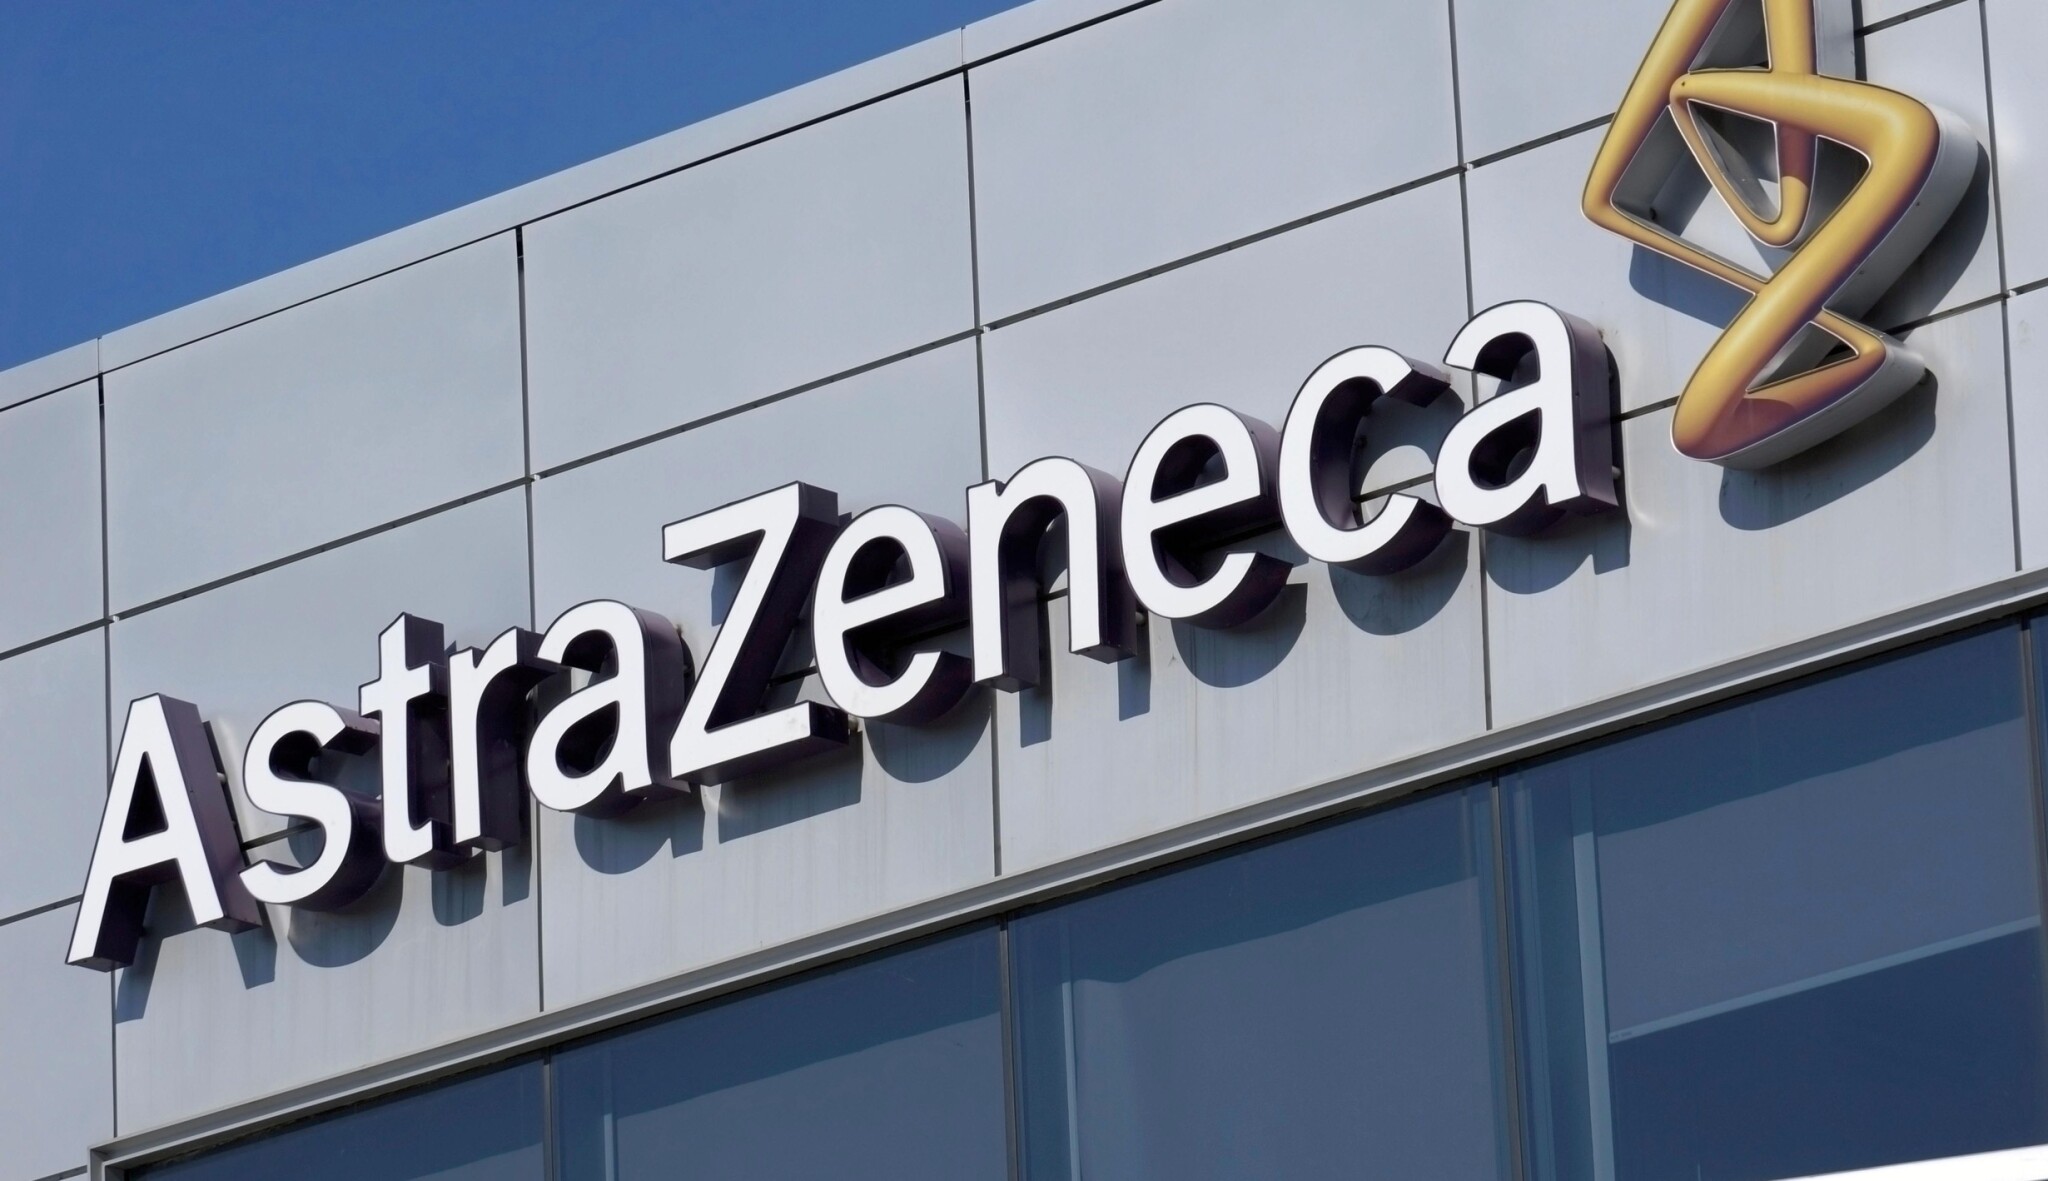 AstraZeneca loni zvýšila tržby o deset procent, letos čeká další růst